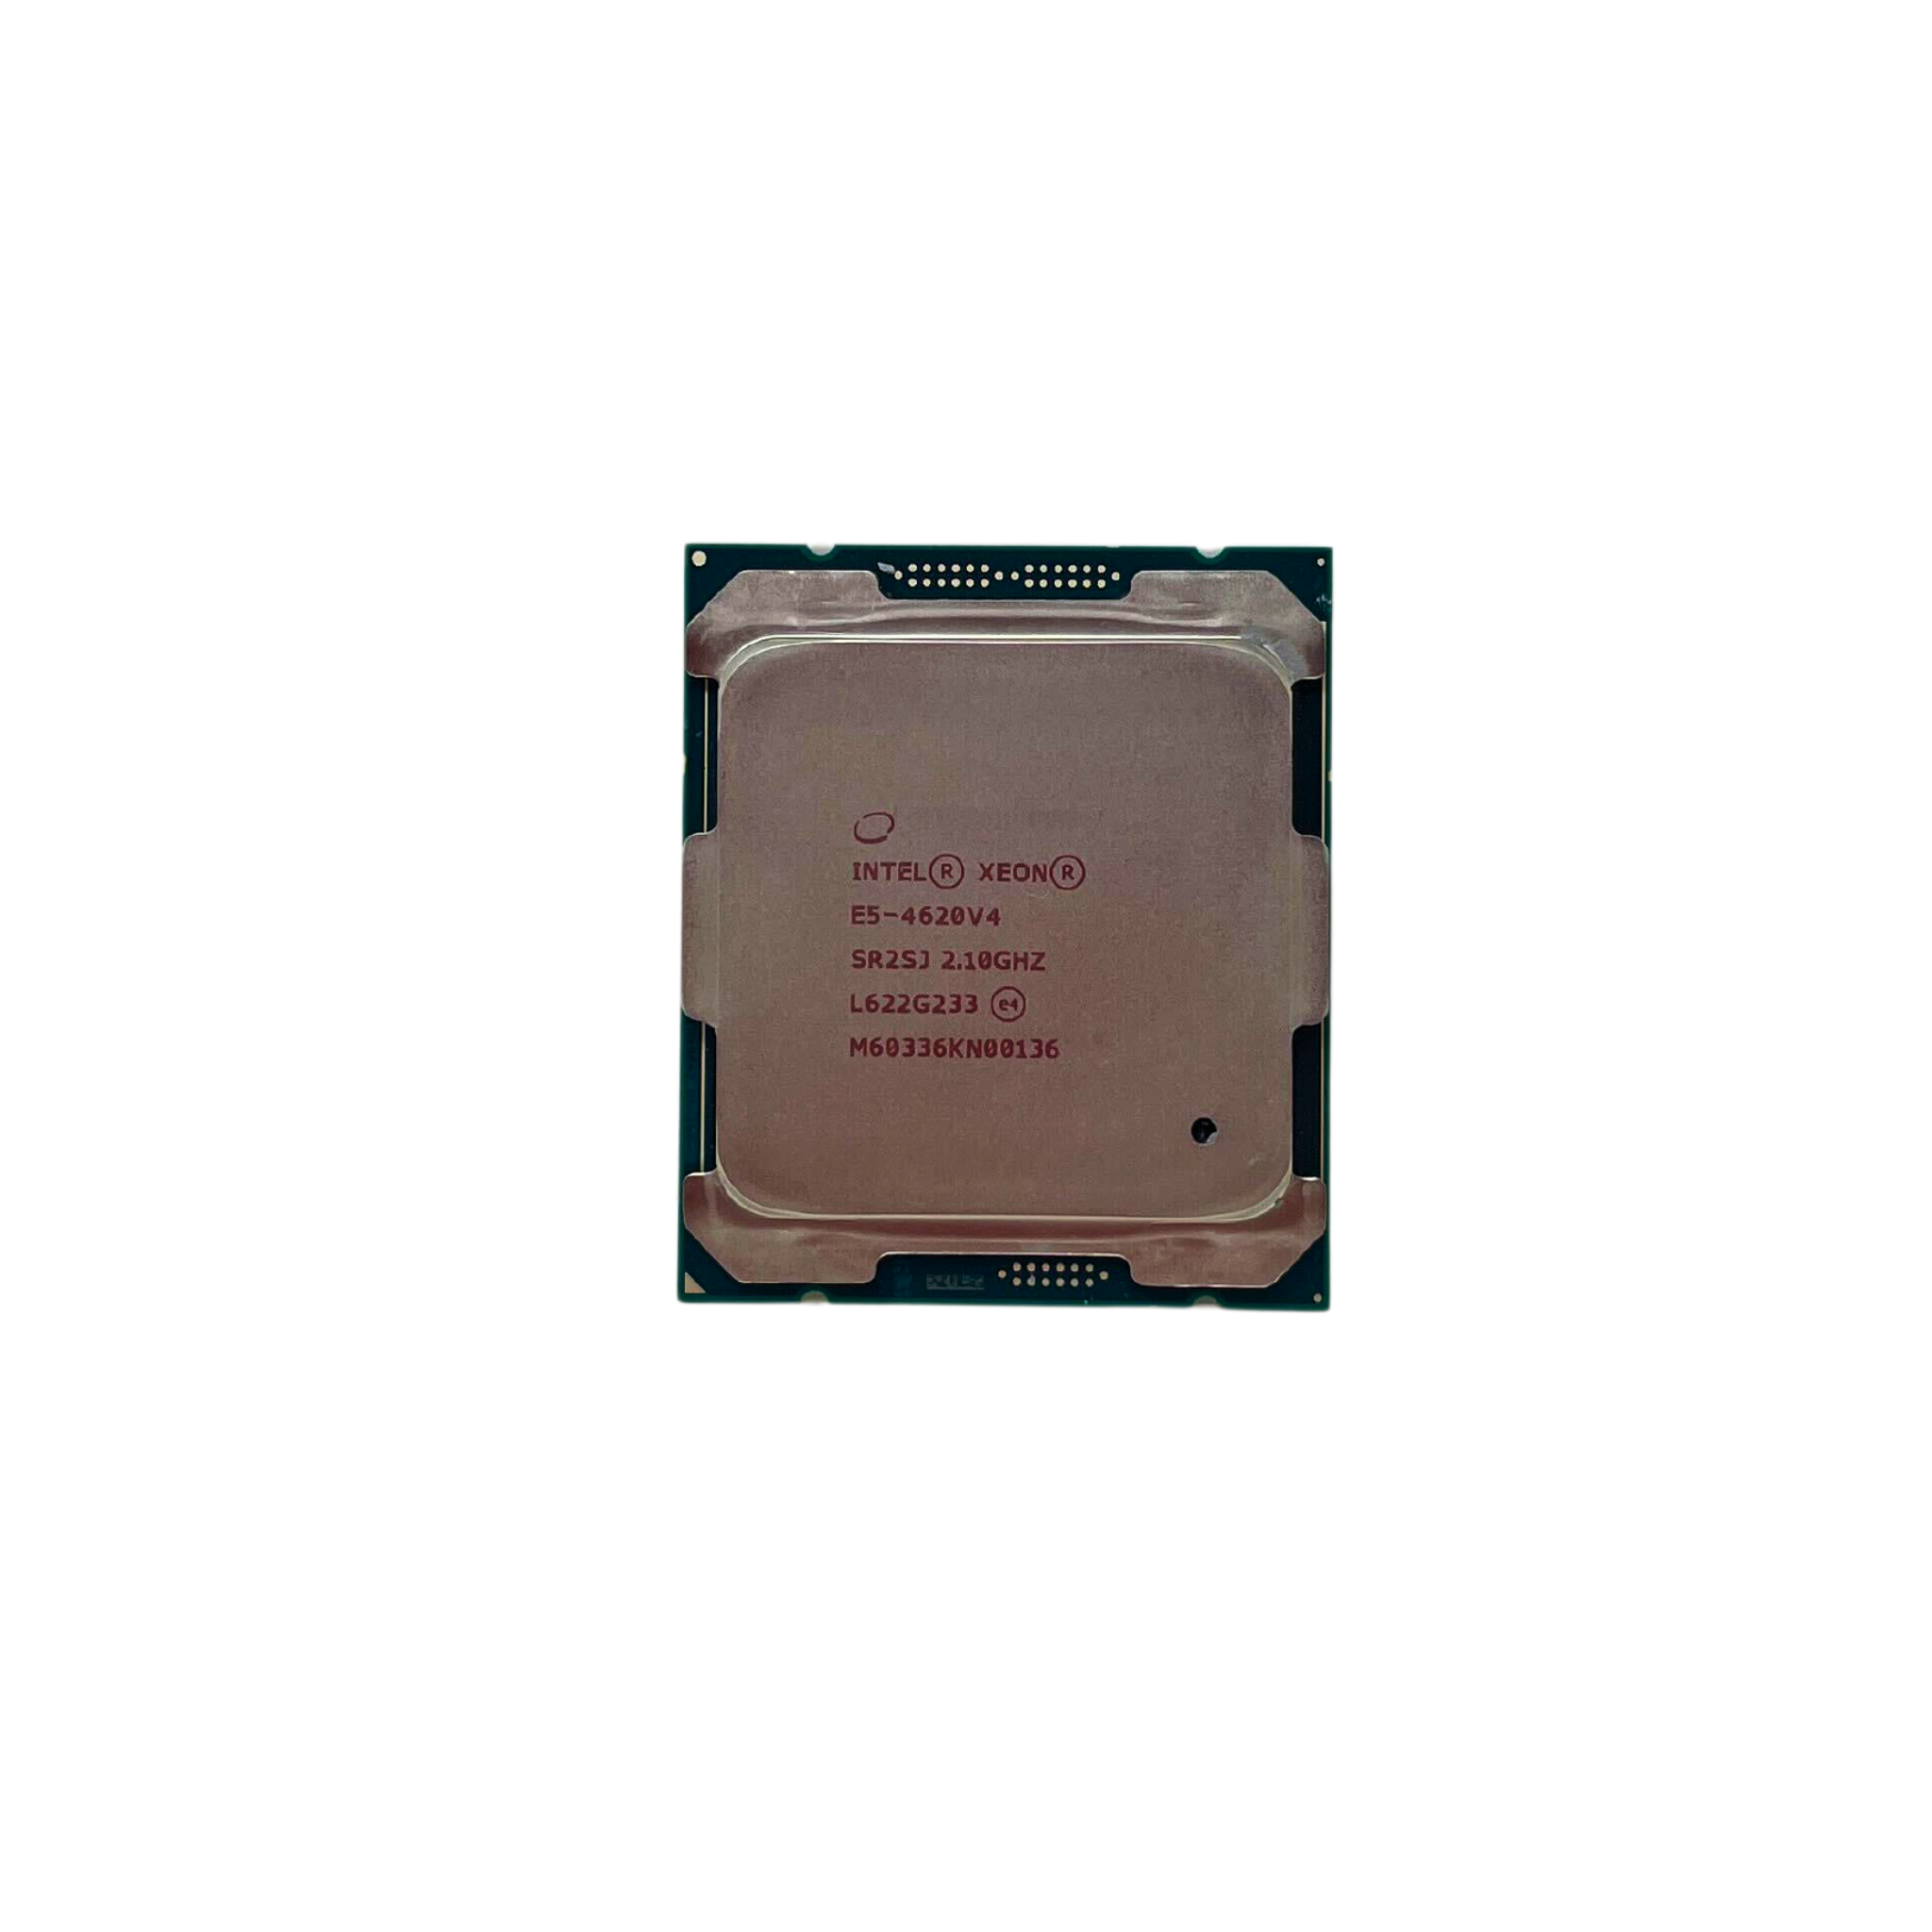  Intel Xeon E5-4620 V4  10-Core 2.10GHz FCLGA-2011-3 Processor (Xeon E5-4620)